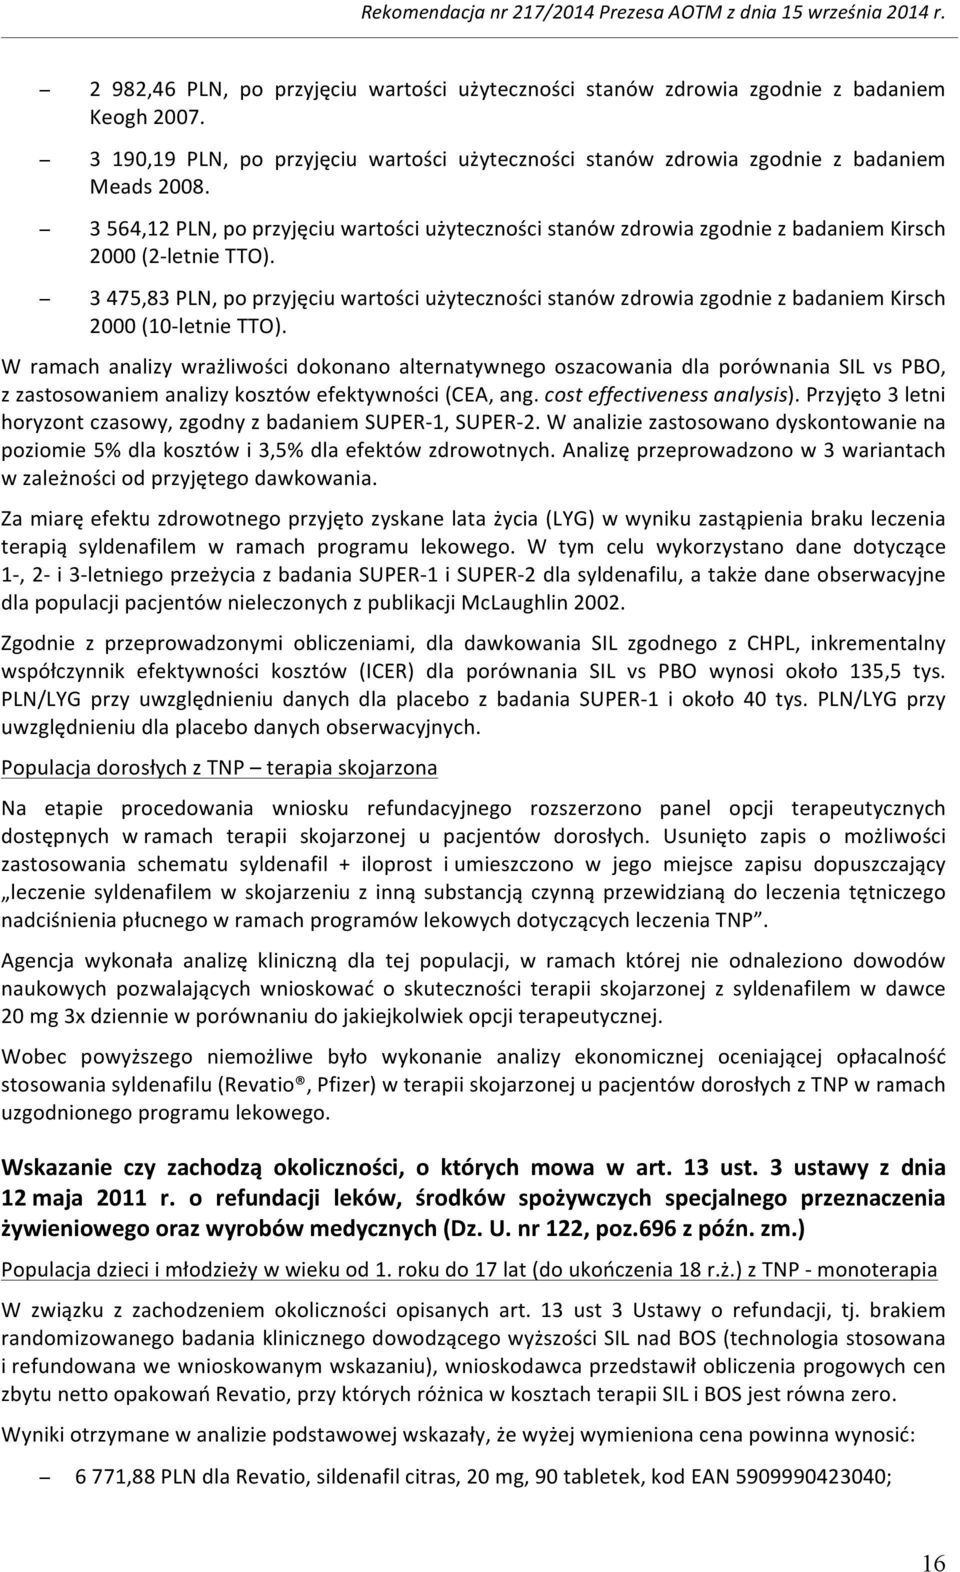 3 475,83 PLN, po przyjęciu wartości użyteczności stanów zdrowia zgodnie z badaniem Kirsch 2000 (10- letnie TTO).